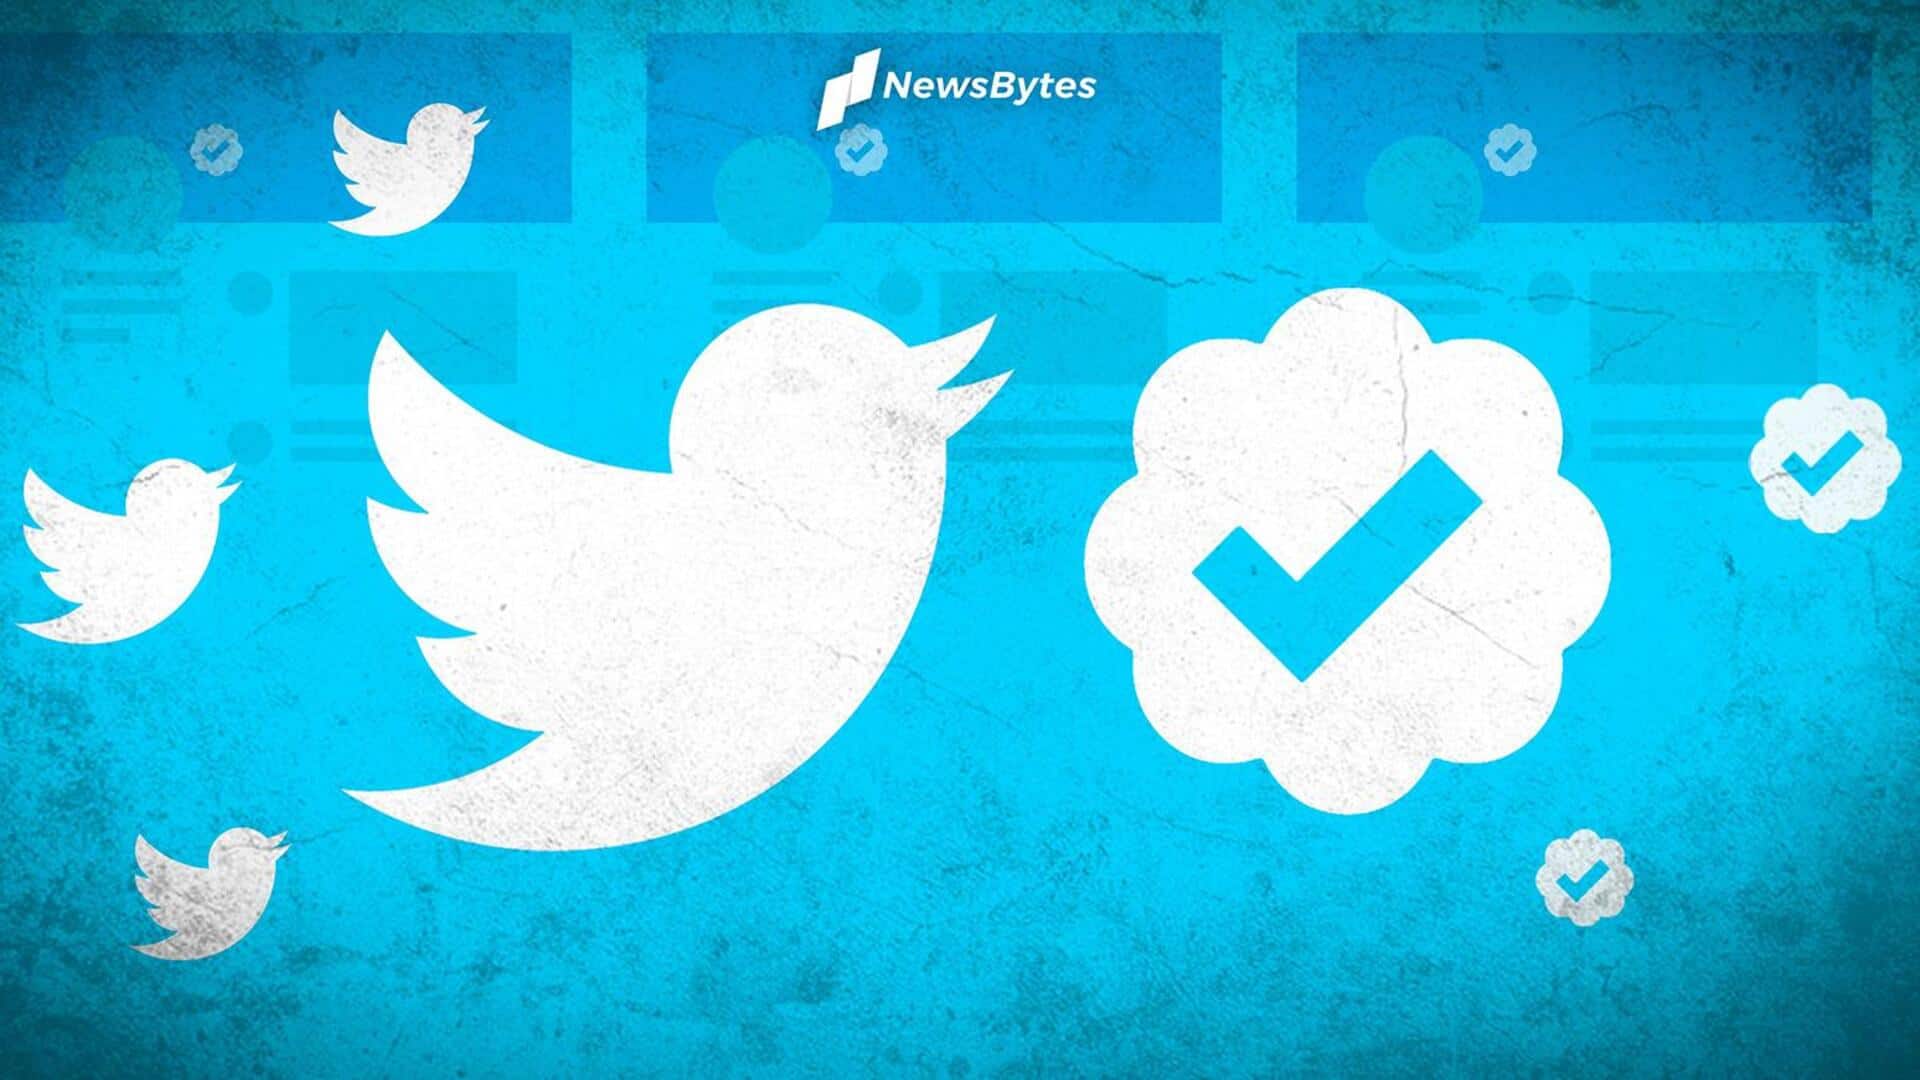 ट्विटर अभिनेताओं, राजनेताओं और खिलाड़ियों को फिर से मुफ्त में दे रही ब्लू टिक